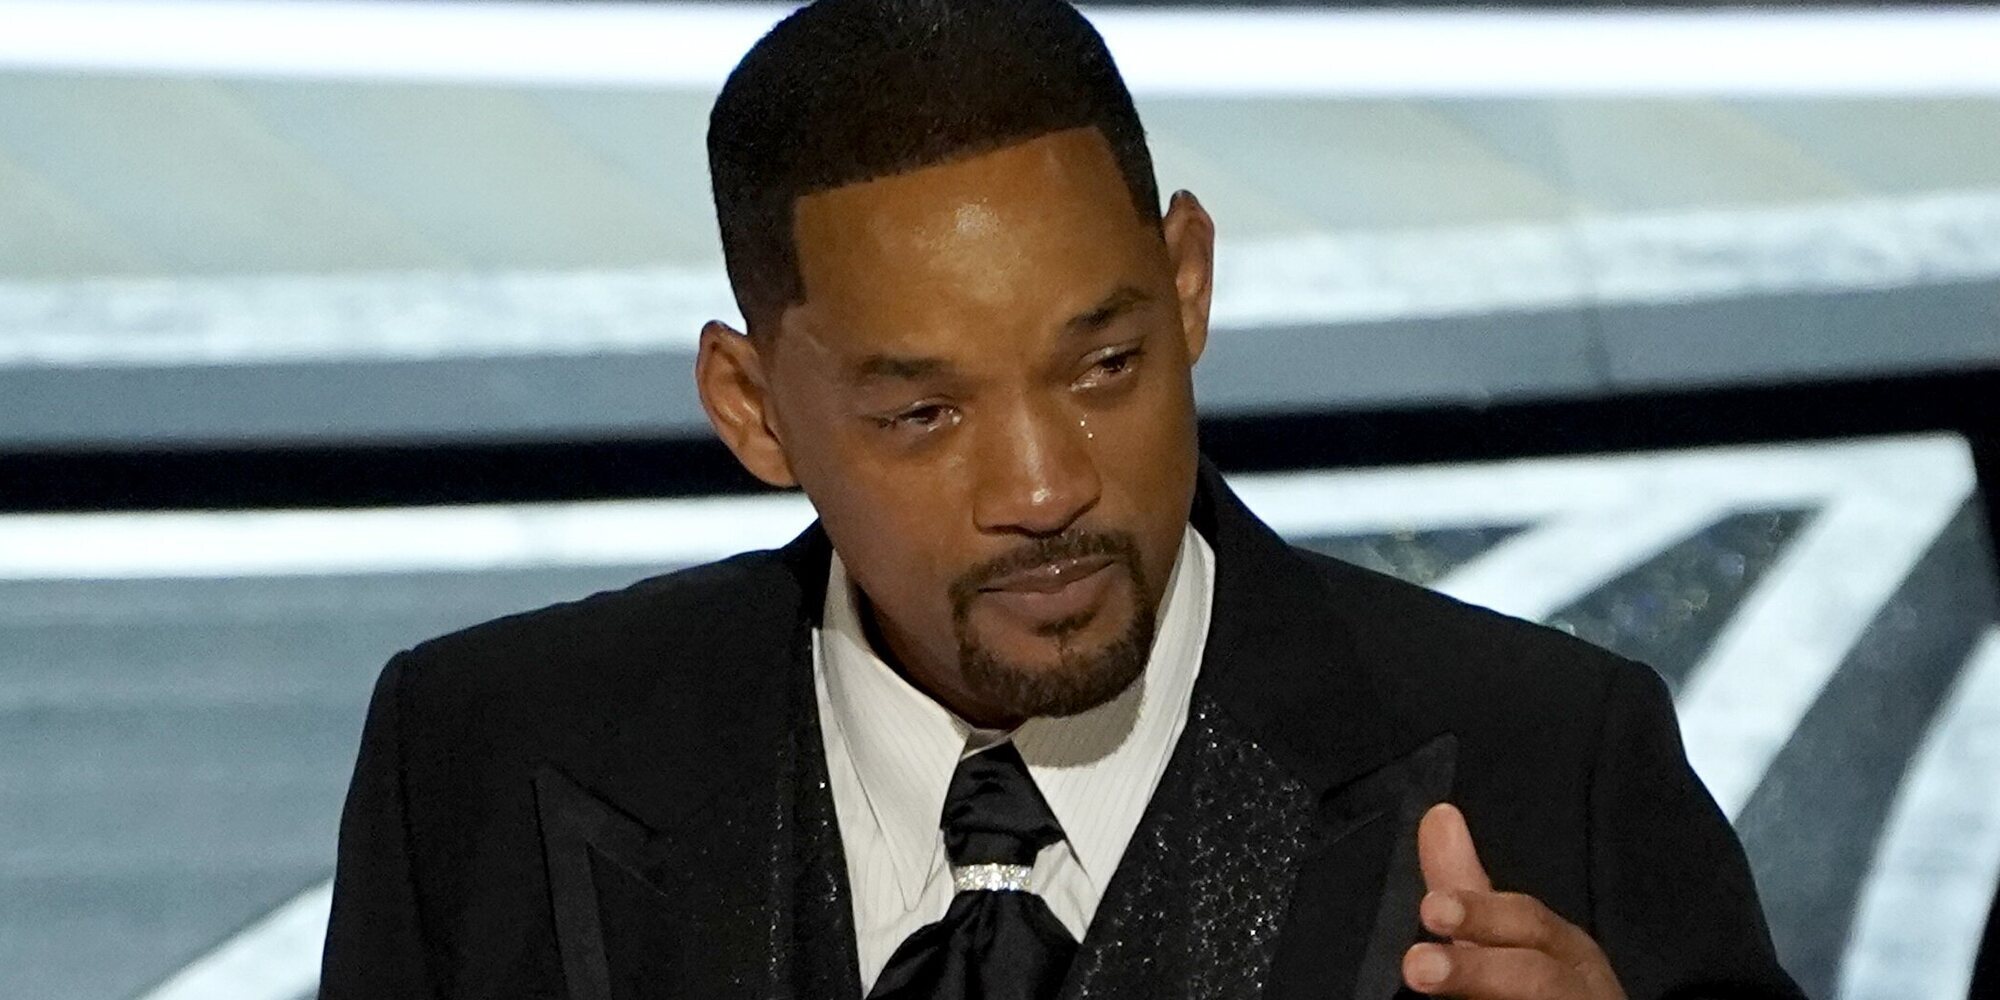 La Policía estaba preparada para arrestar a Will Smith tras abofetear a Chris Rock, según un productor de los Oscar